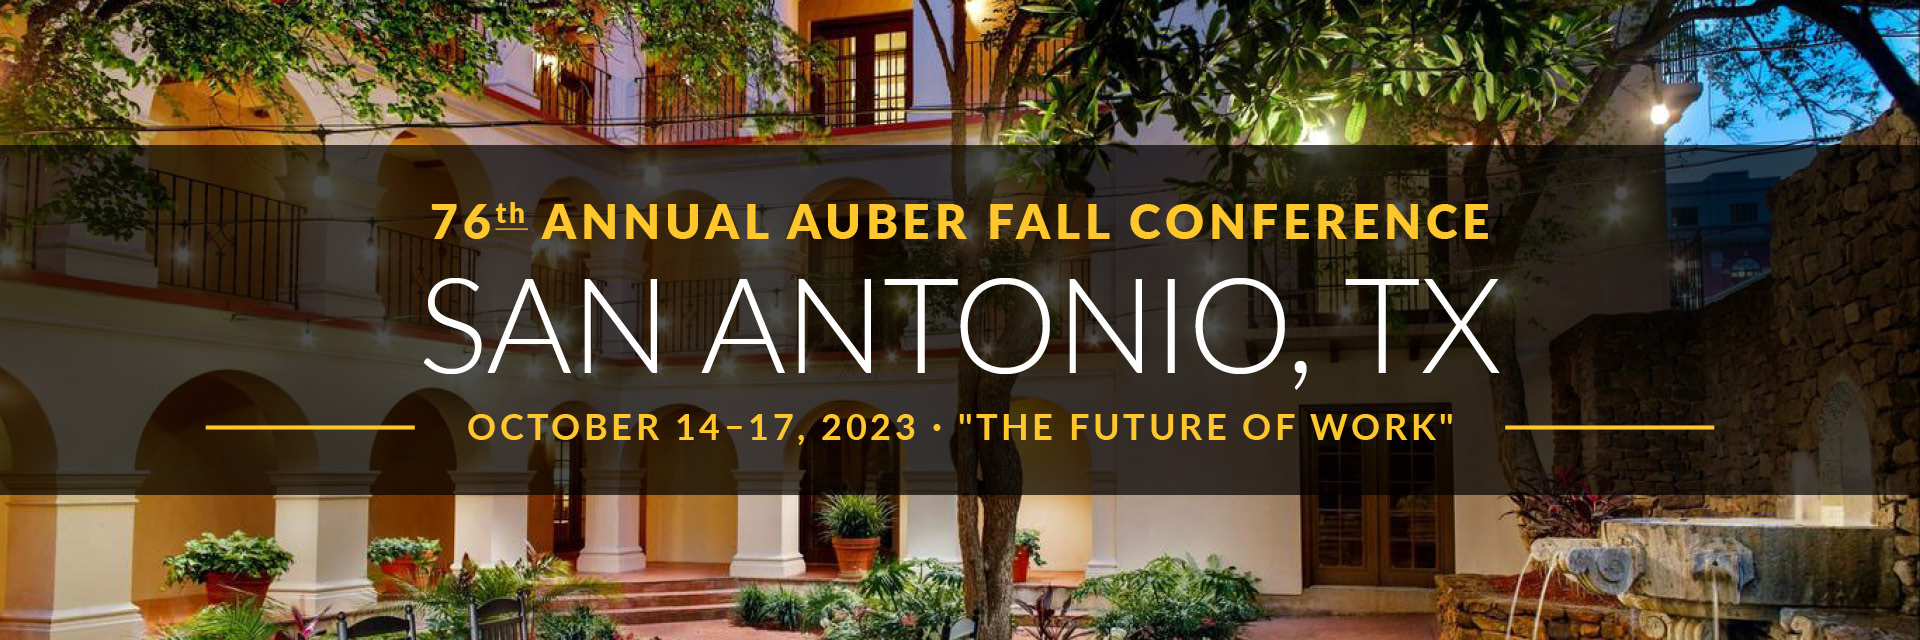 San Antonio 2023 Conference